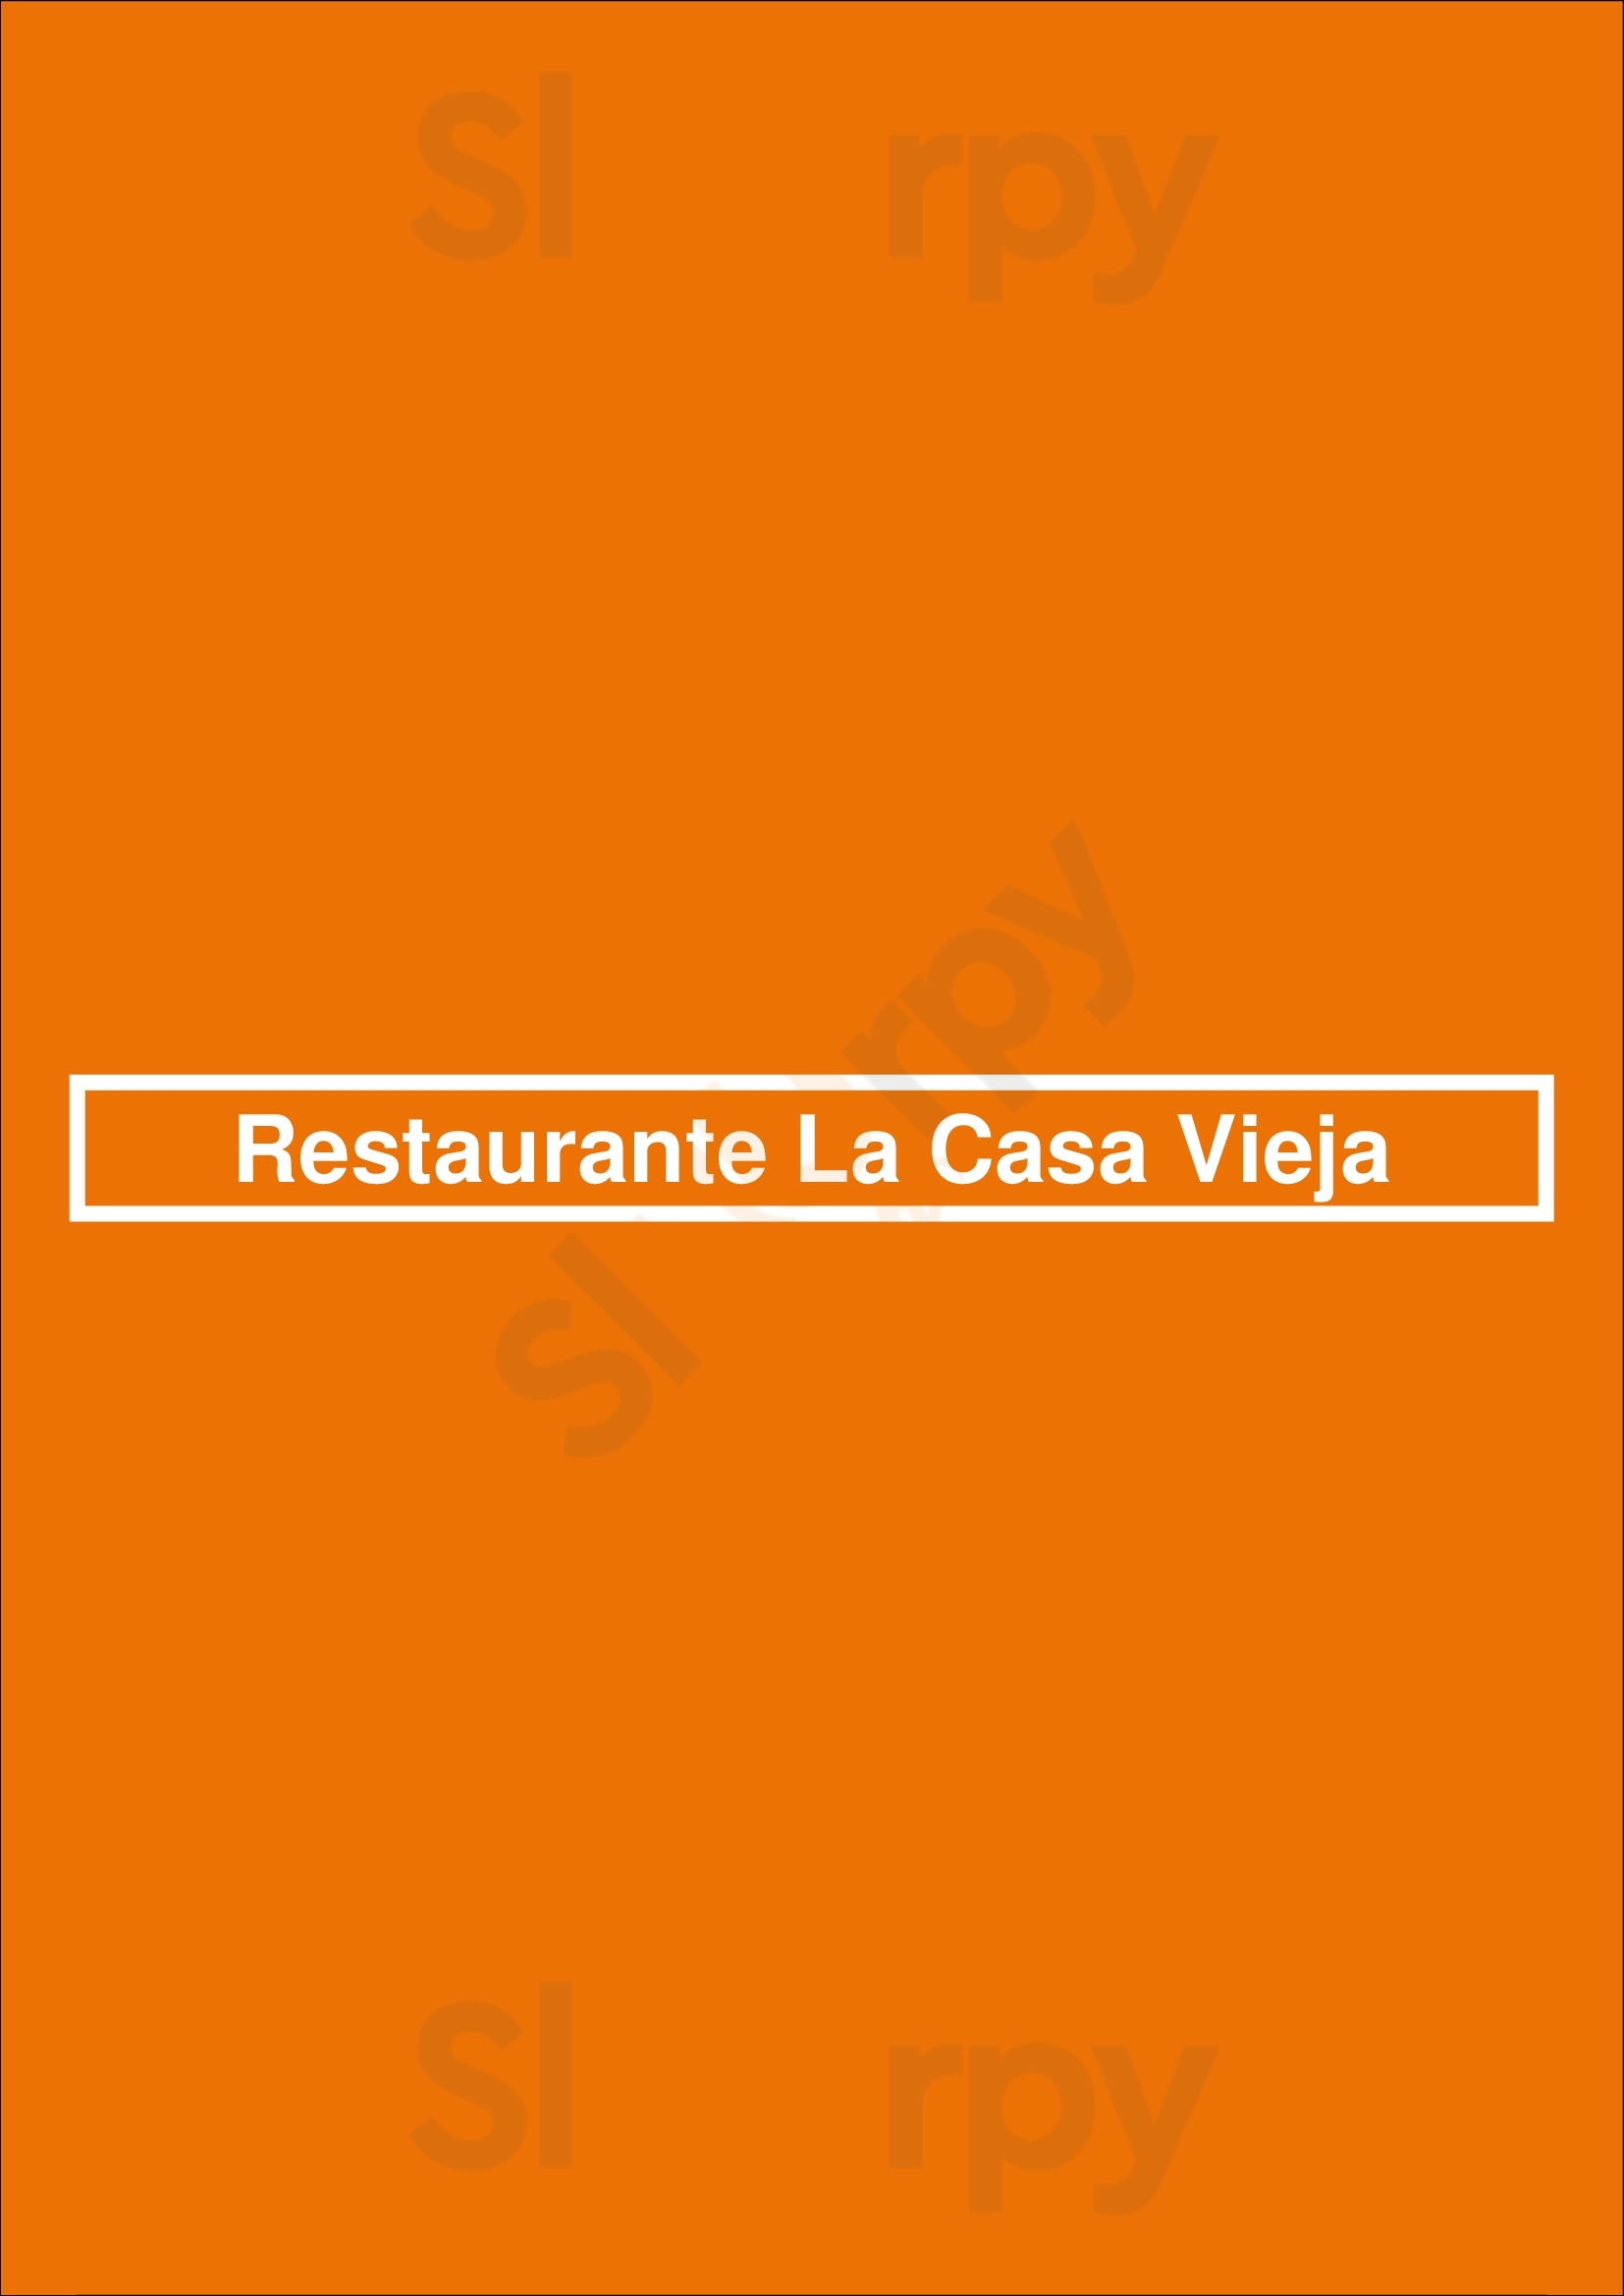 Restaurante La Casa Vieja Santiago del Teide Menu - 1